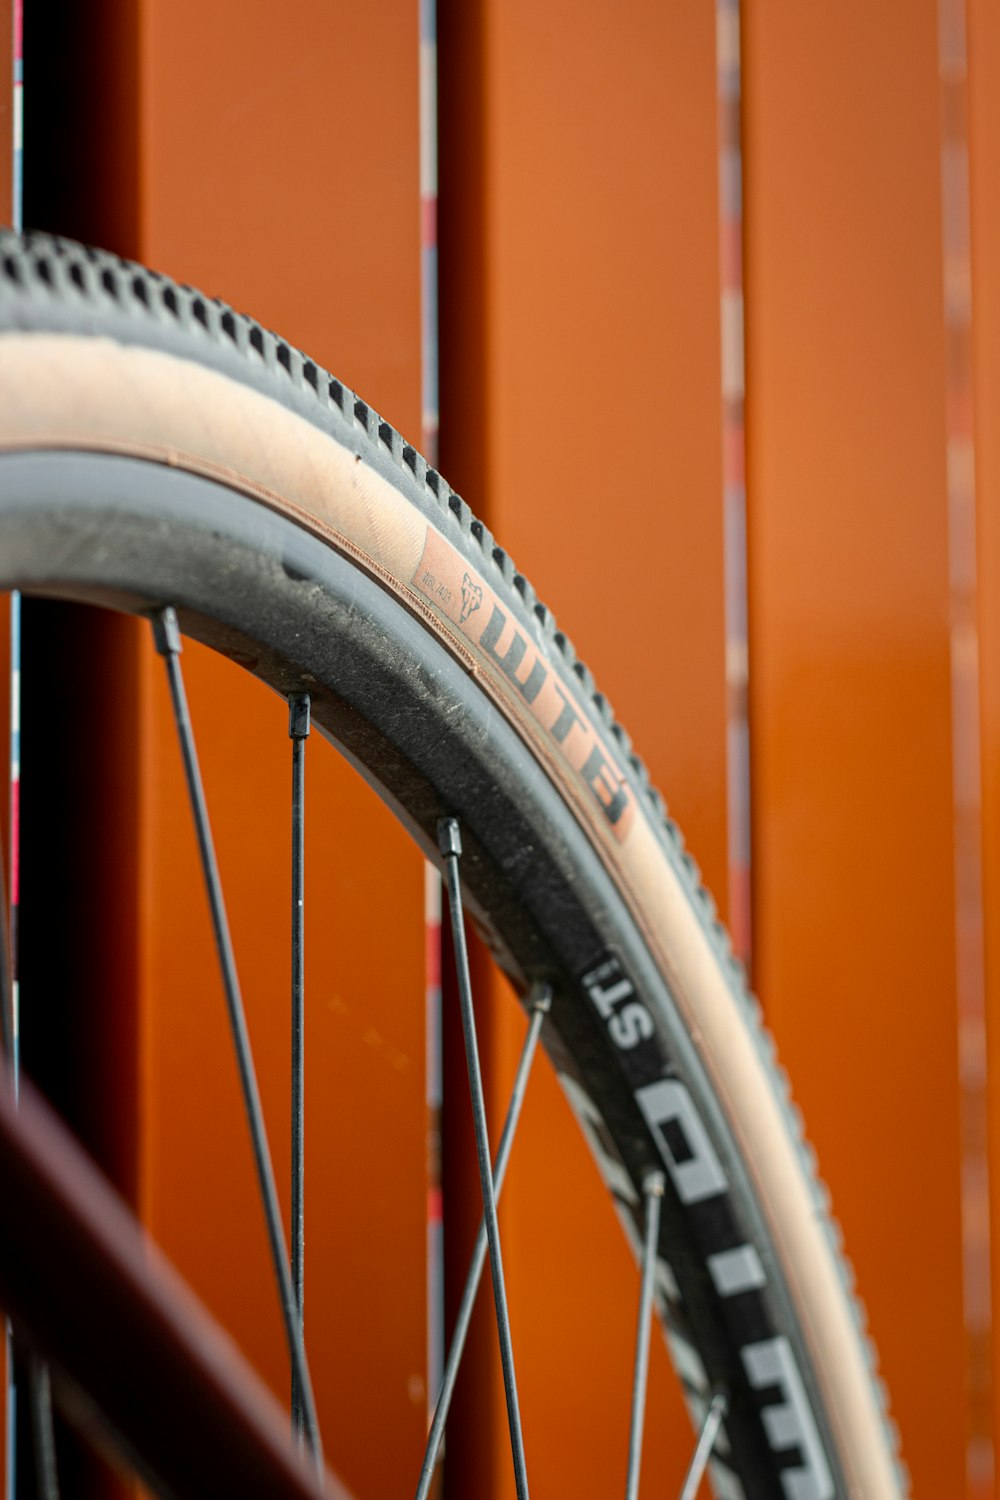 a close up of a bike tire on a bike